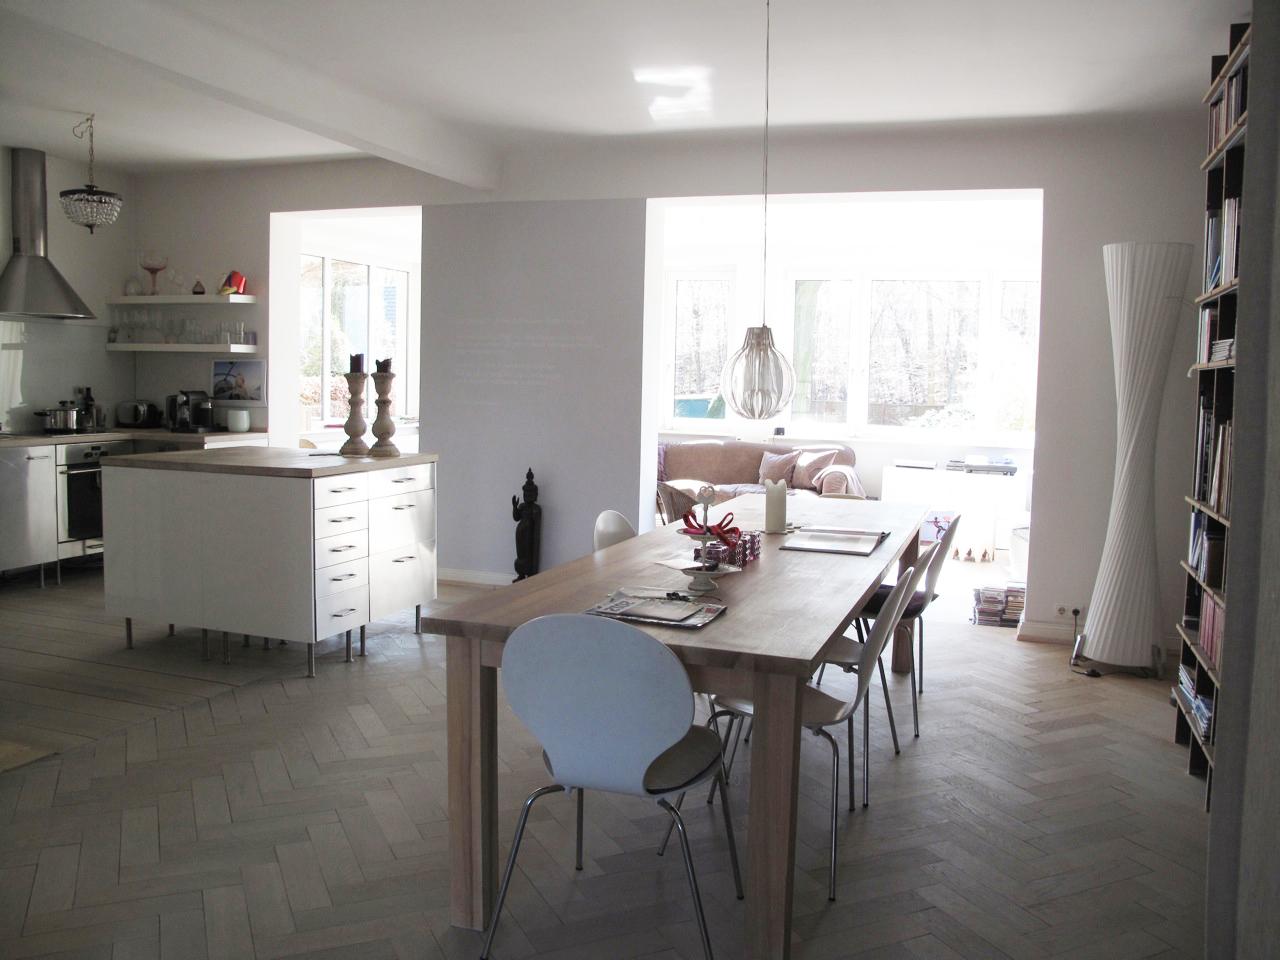 Esstisch aus Holz in der Wohnküche #wohnküche #küchenblock #küchentheke ©scout for location